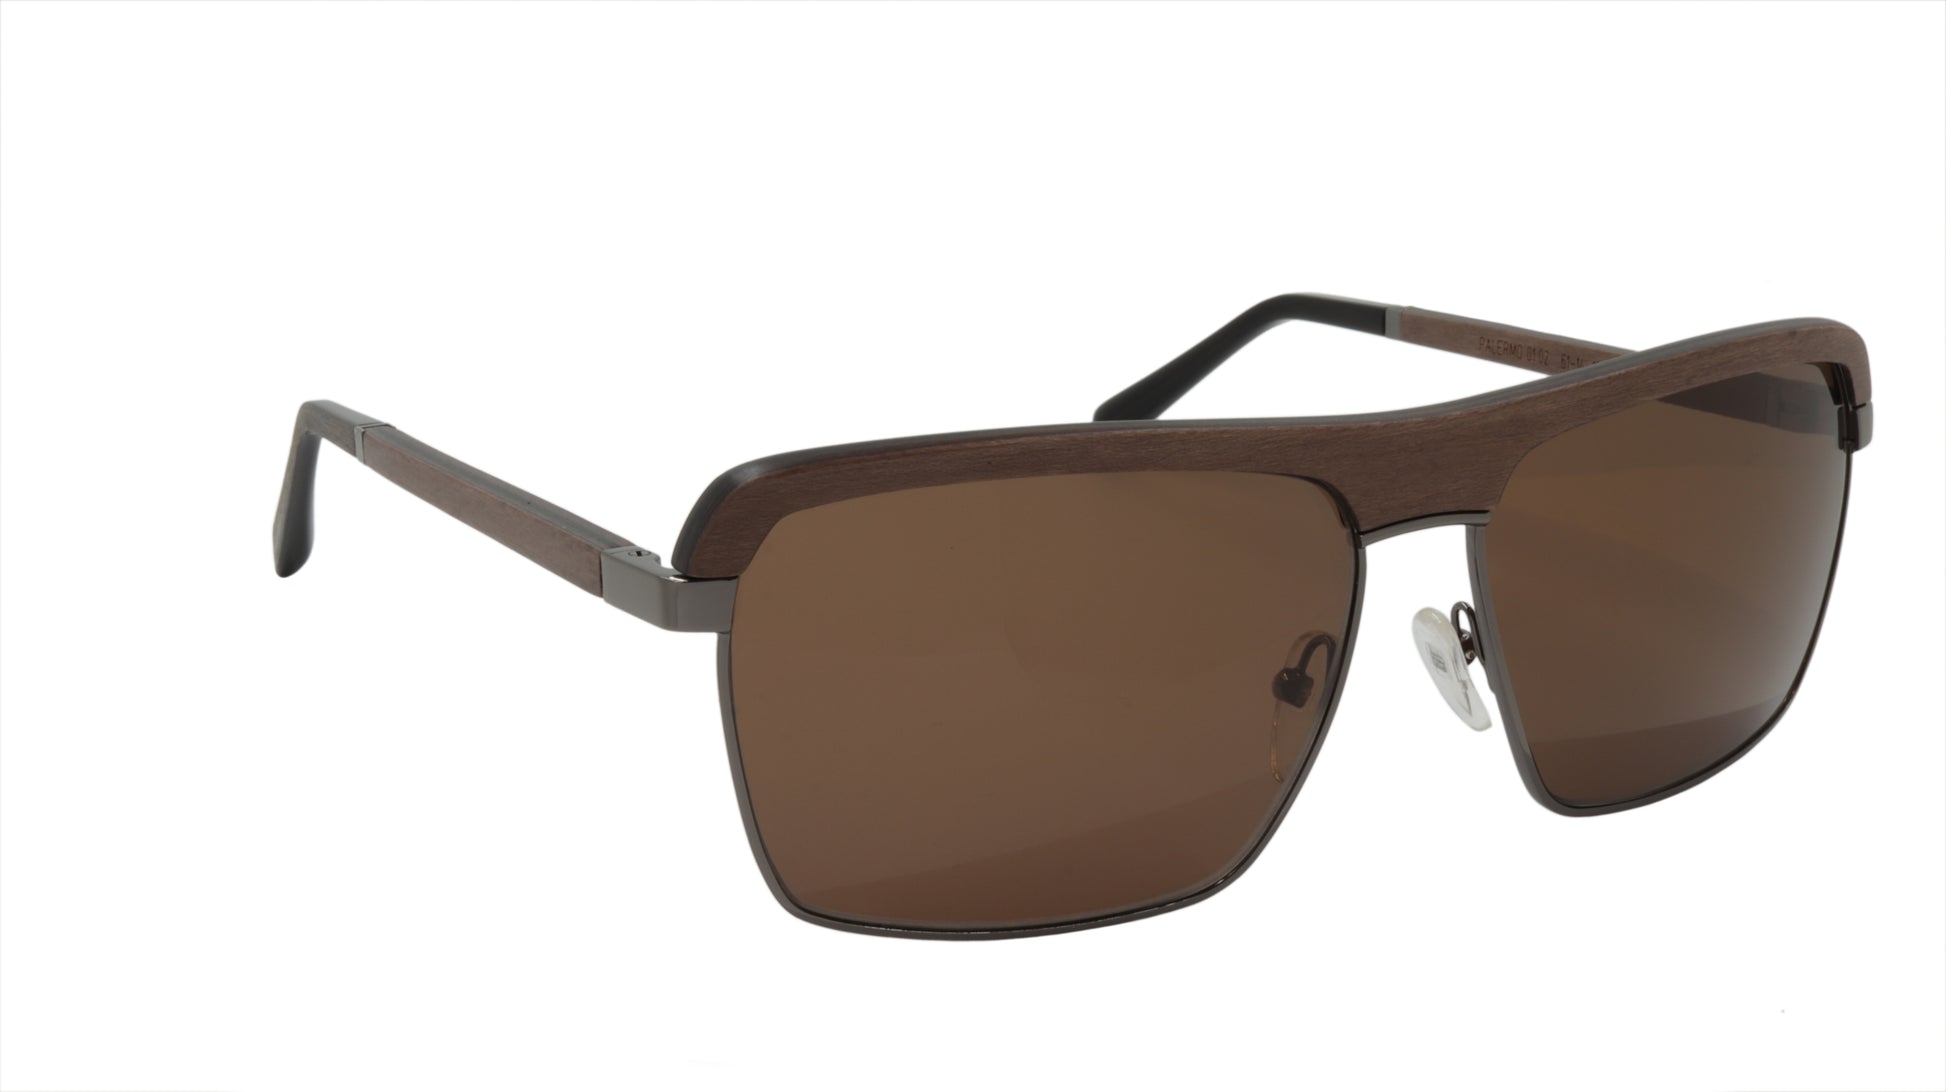 Palermo Sunglasses in brown